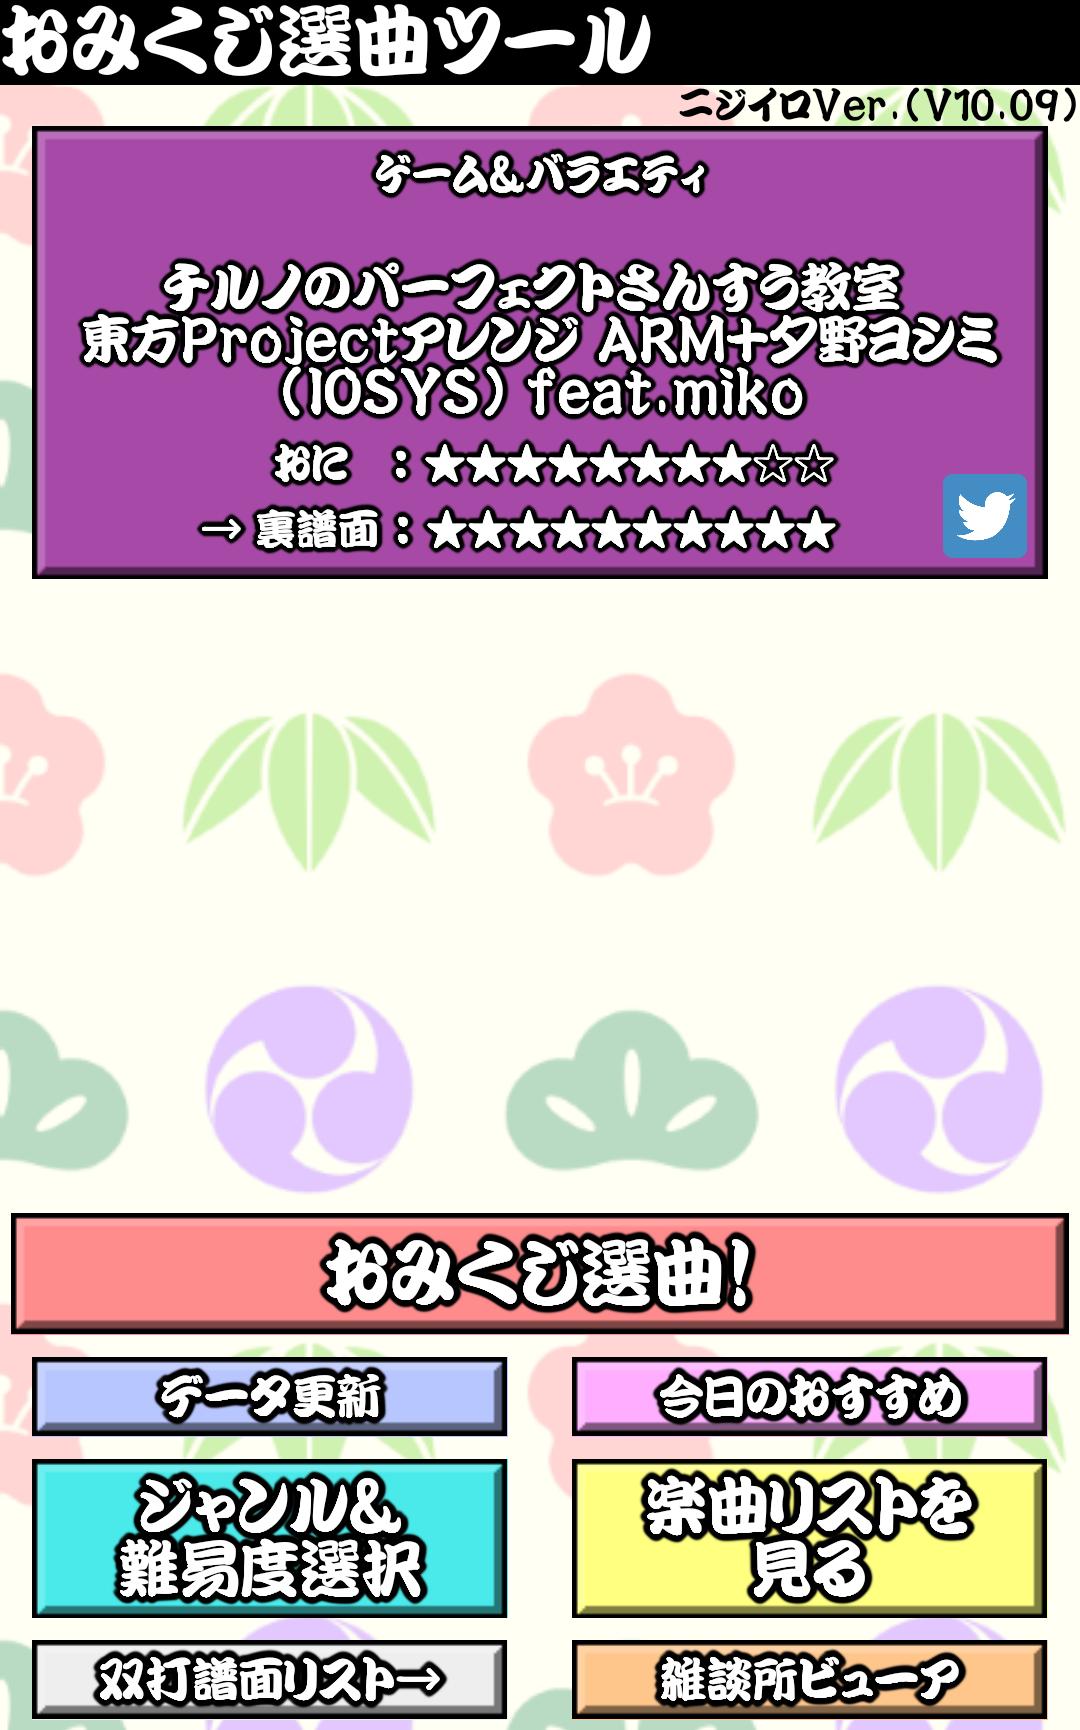 太鼓おみくじ＆雑談所ビューア2 1.63 Screenshot 9